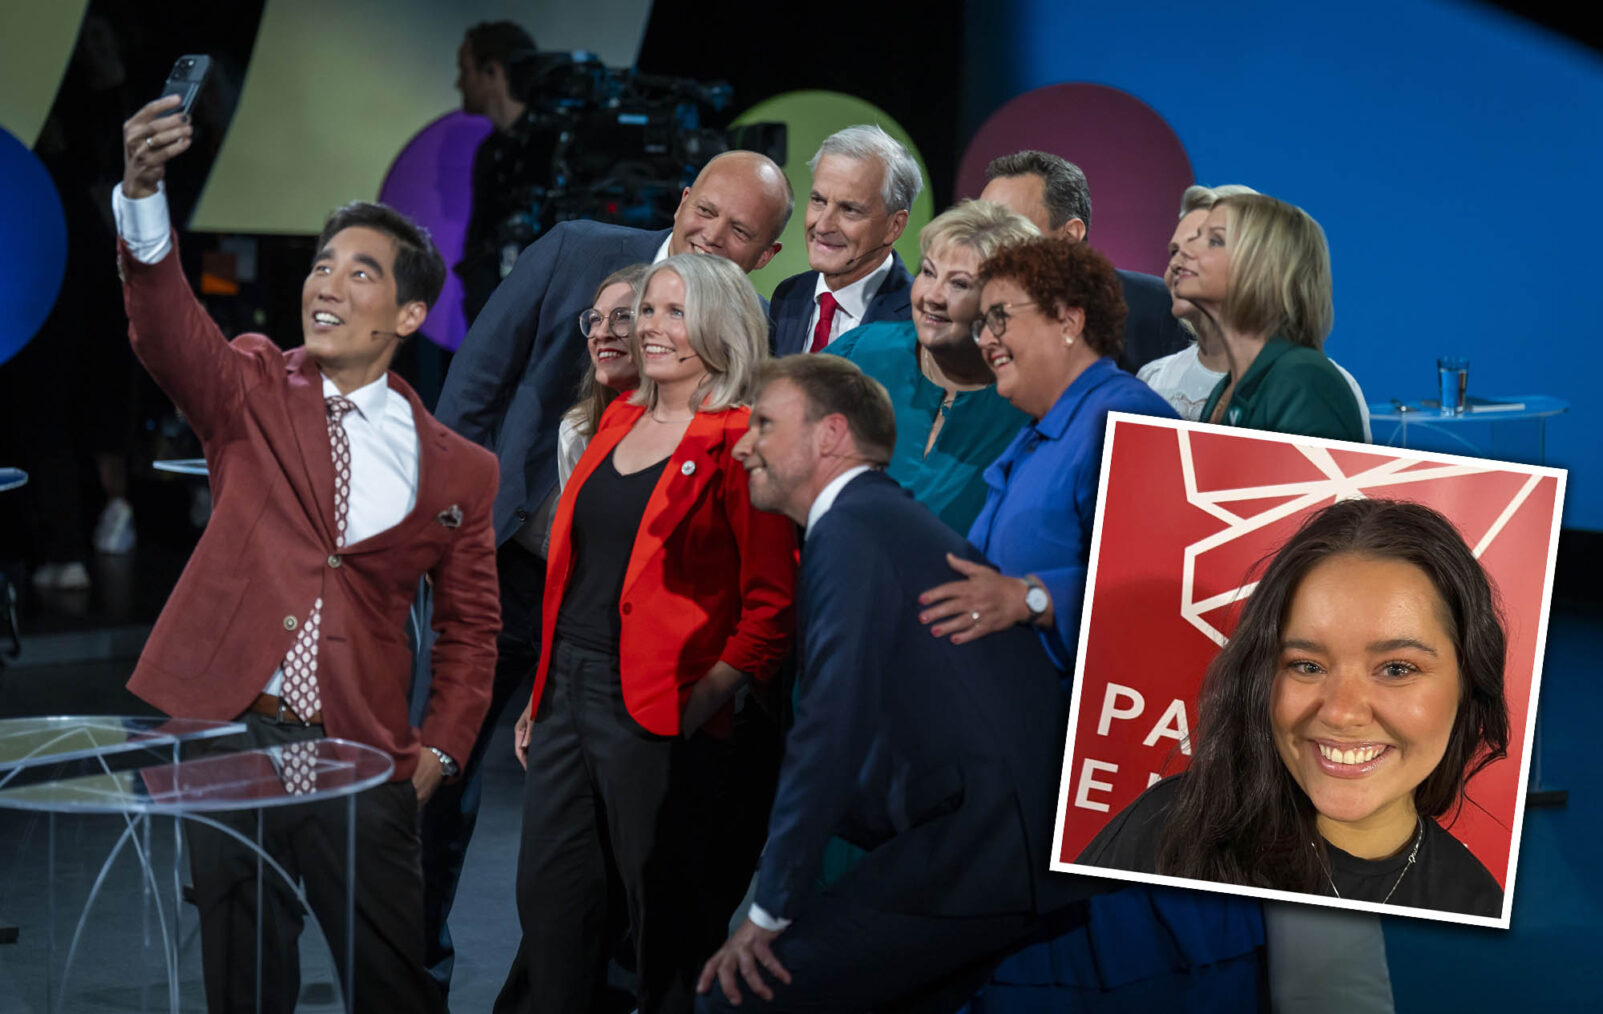 Partiledernre poserer mens programleder Fredrik Sovang tar selfie med alle i bakgrunnen. Bondevik innfelt.